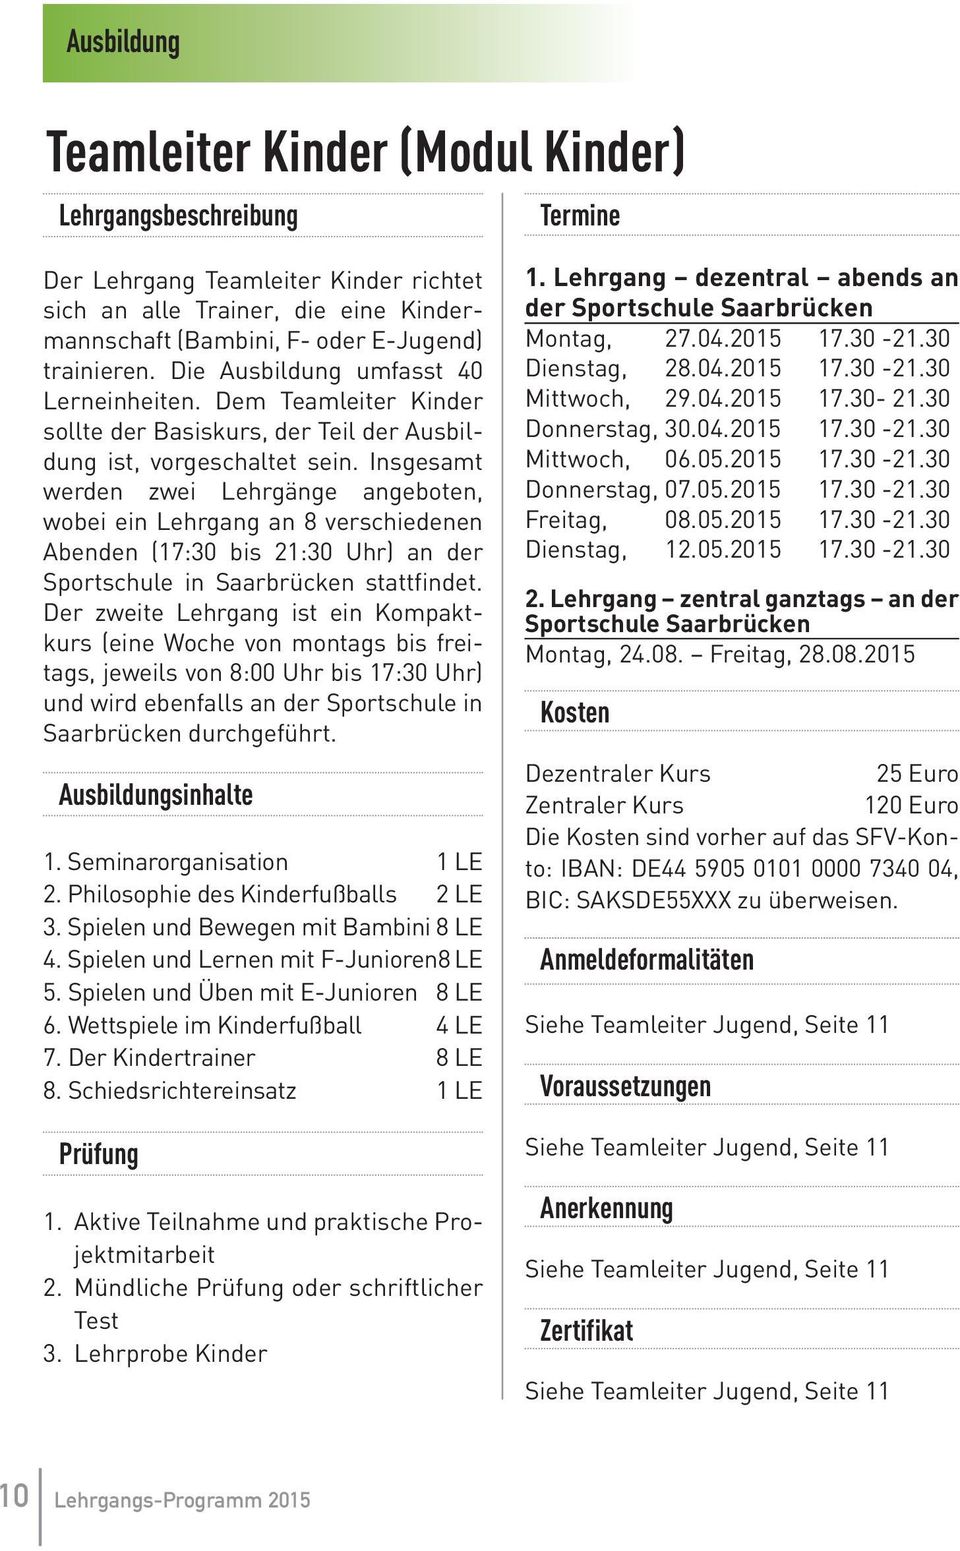 Insgesamt werden zwei Lehrgänge angeboten, wobei ein Lehrgang an 8 verschiedenen Abenden (17:30 bis 21:30 Uhr) an der Sportschule in Saarbrücken stattfindet.